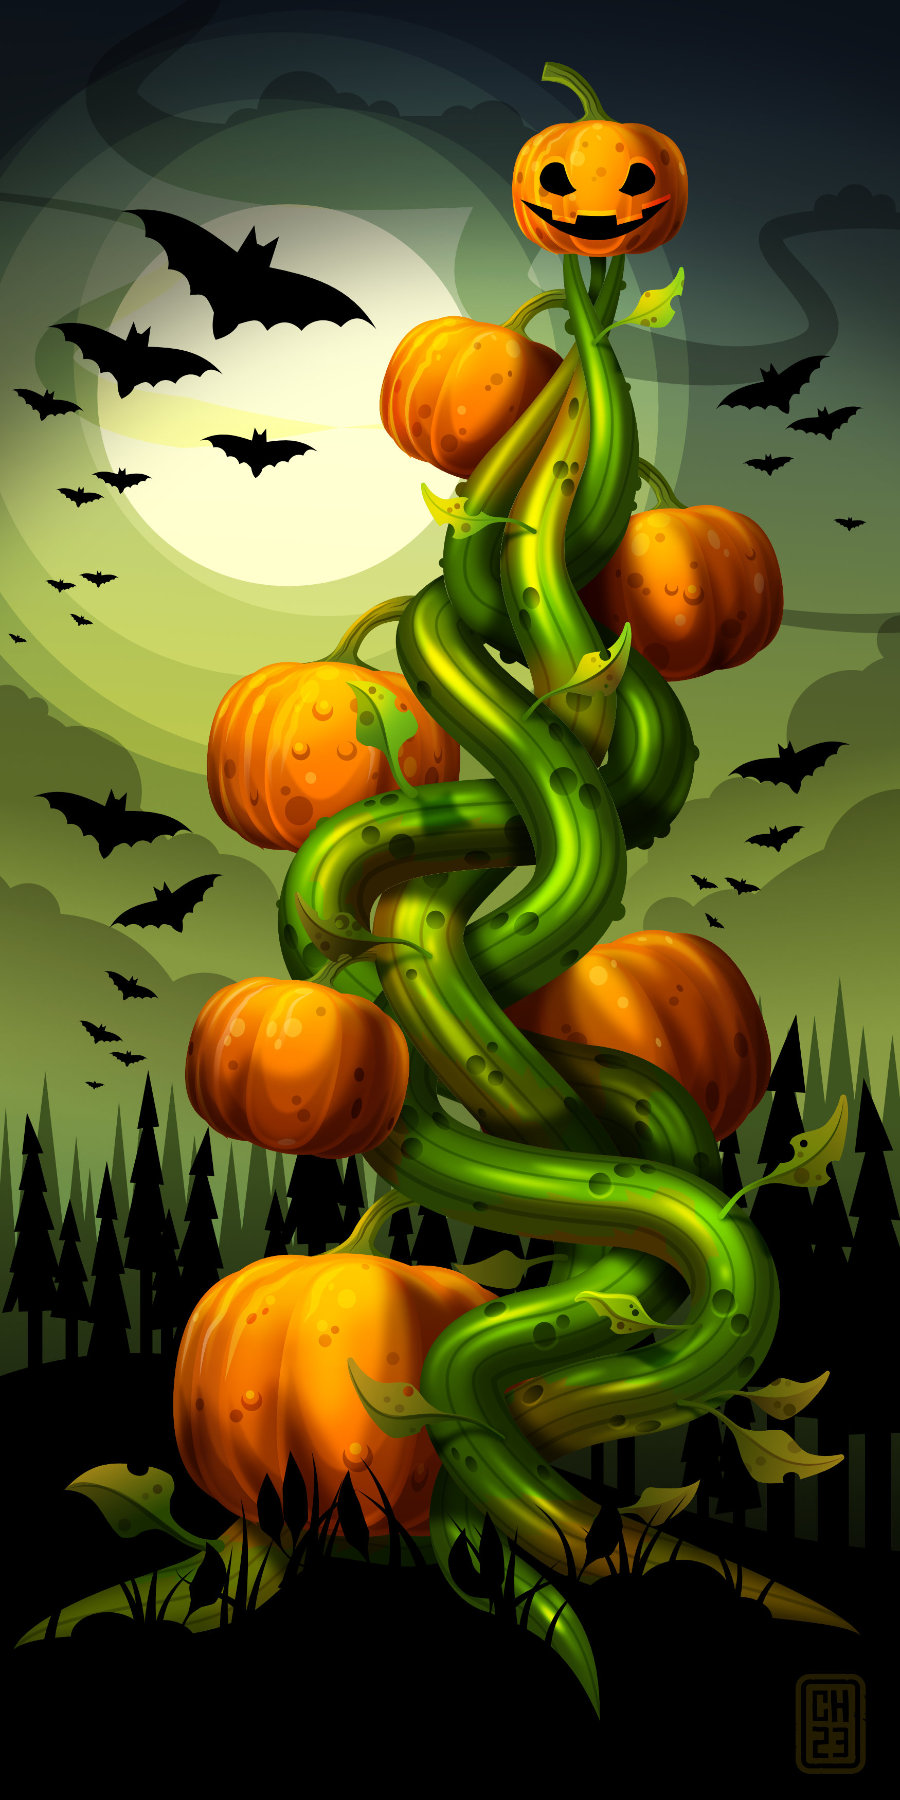 2dgameartguru - Tower of the Pumpkin 